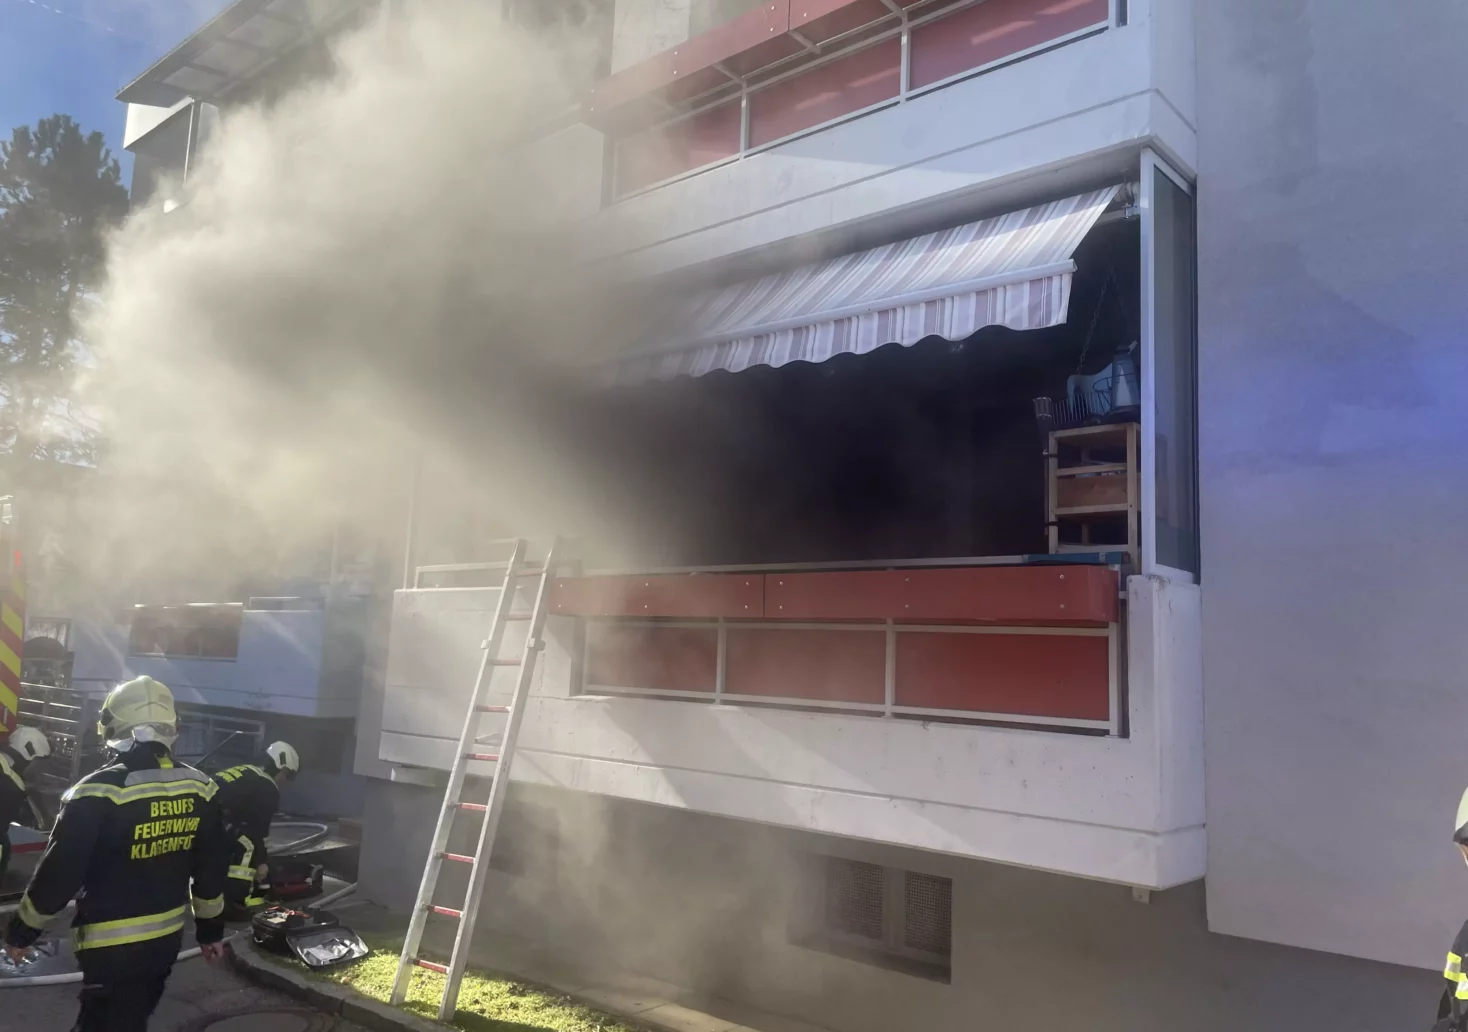 Feuer in Wohnung ausgebrochen: „Dachten zuerst, es brennt nicht“